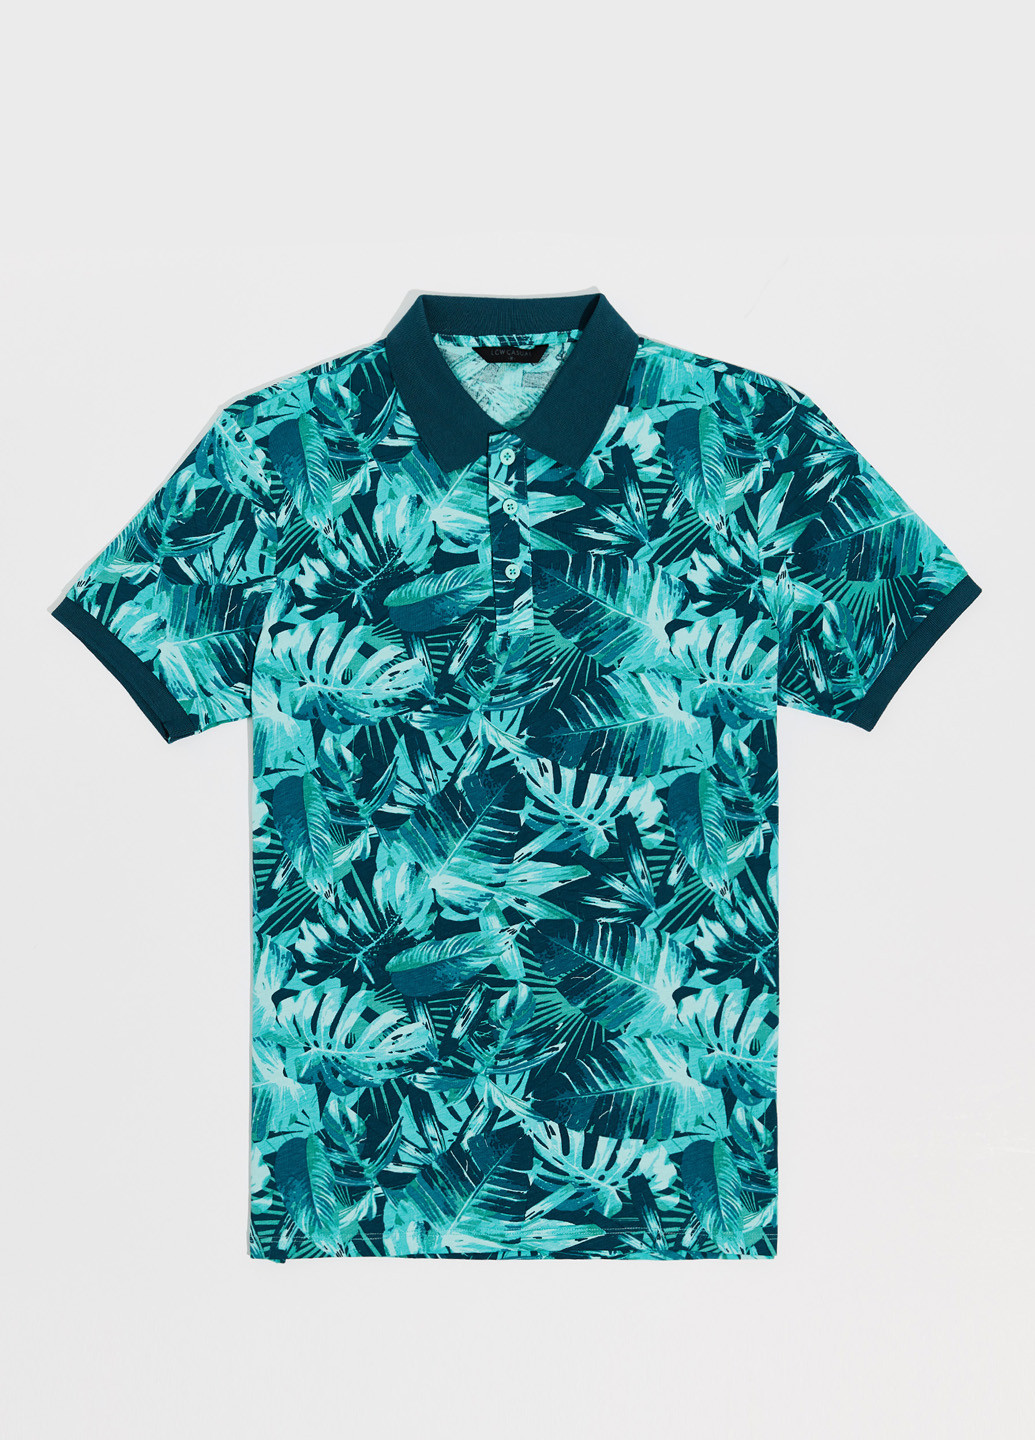 Бирюзовая футболка-поло для мужчин LC Waikiki с рисунком